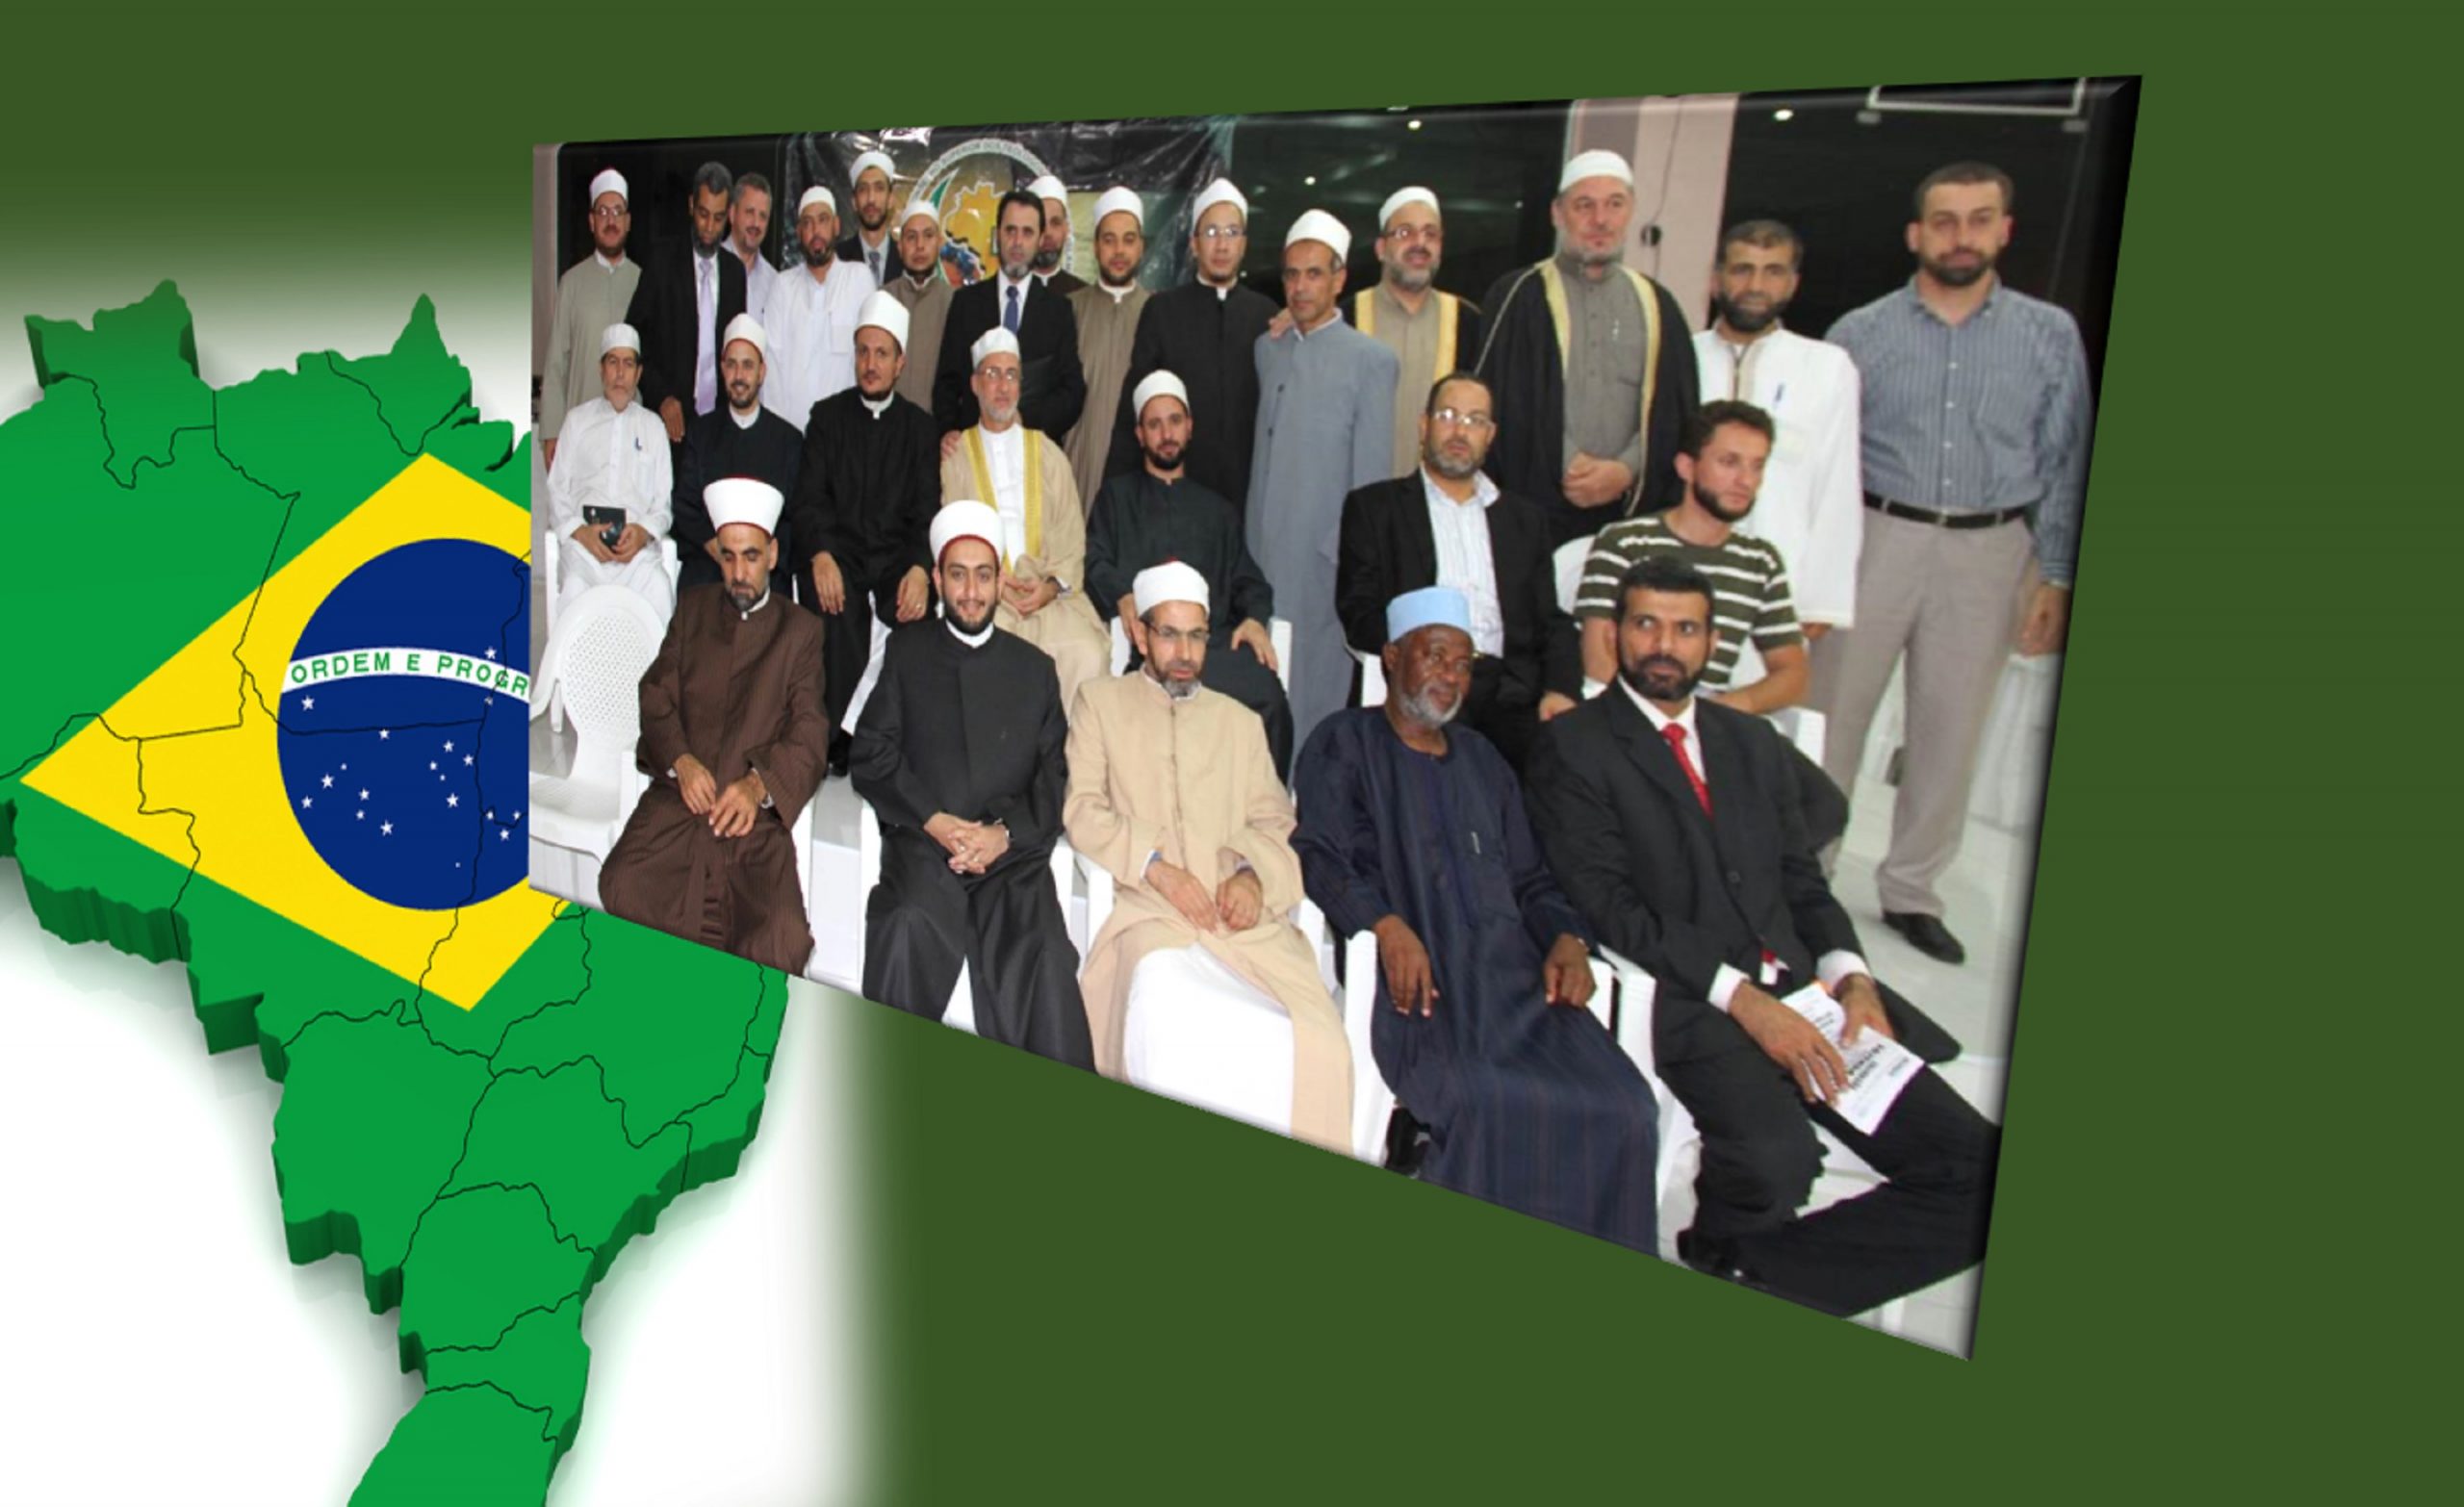 عقبات تعوق منذ 20 عاما تشكيل هيئة رسمية موحدة تتحدث باسم مسلمي البرازيل